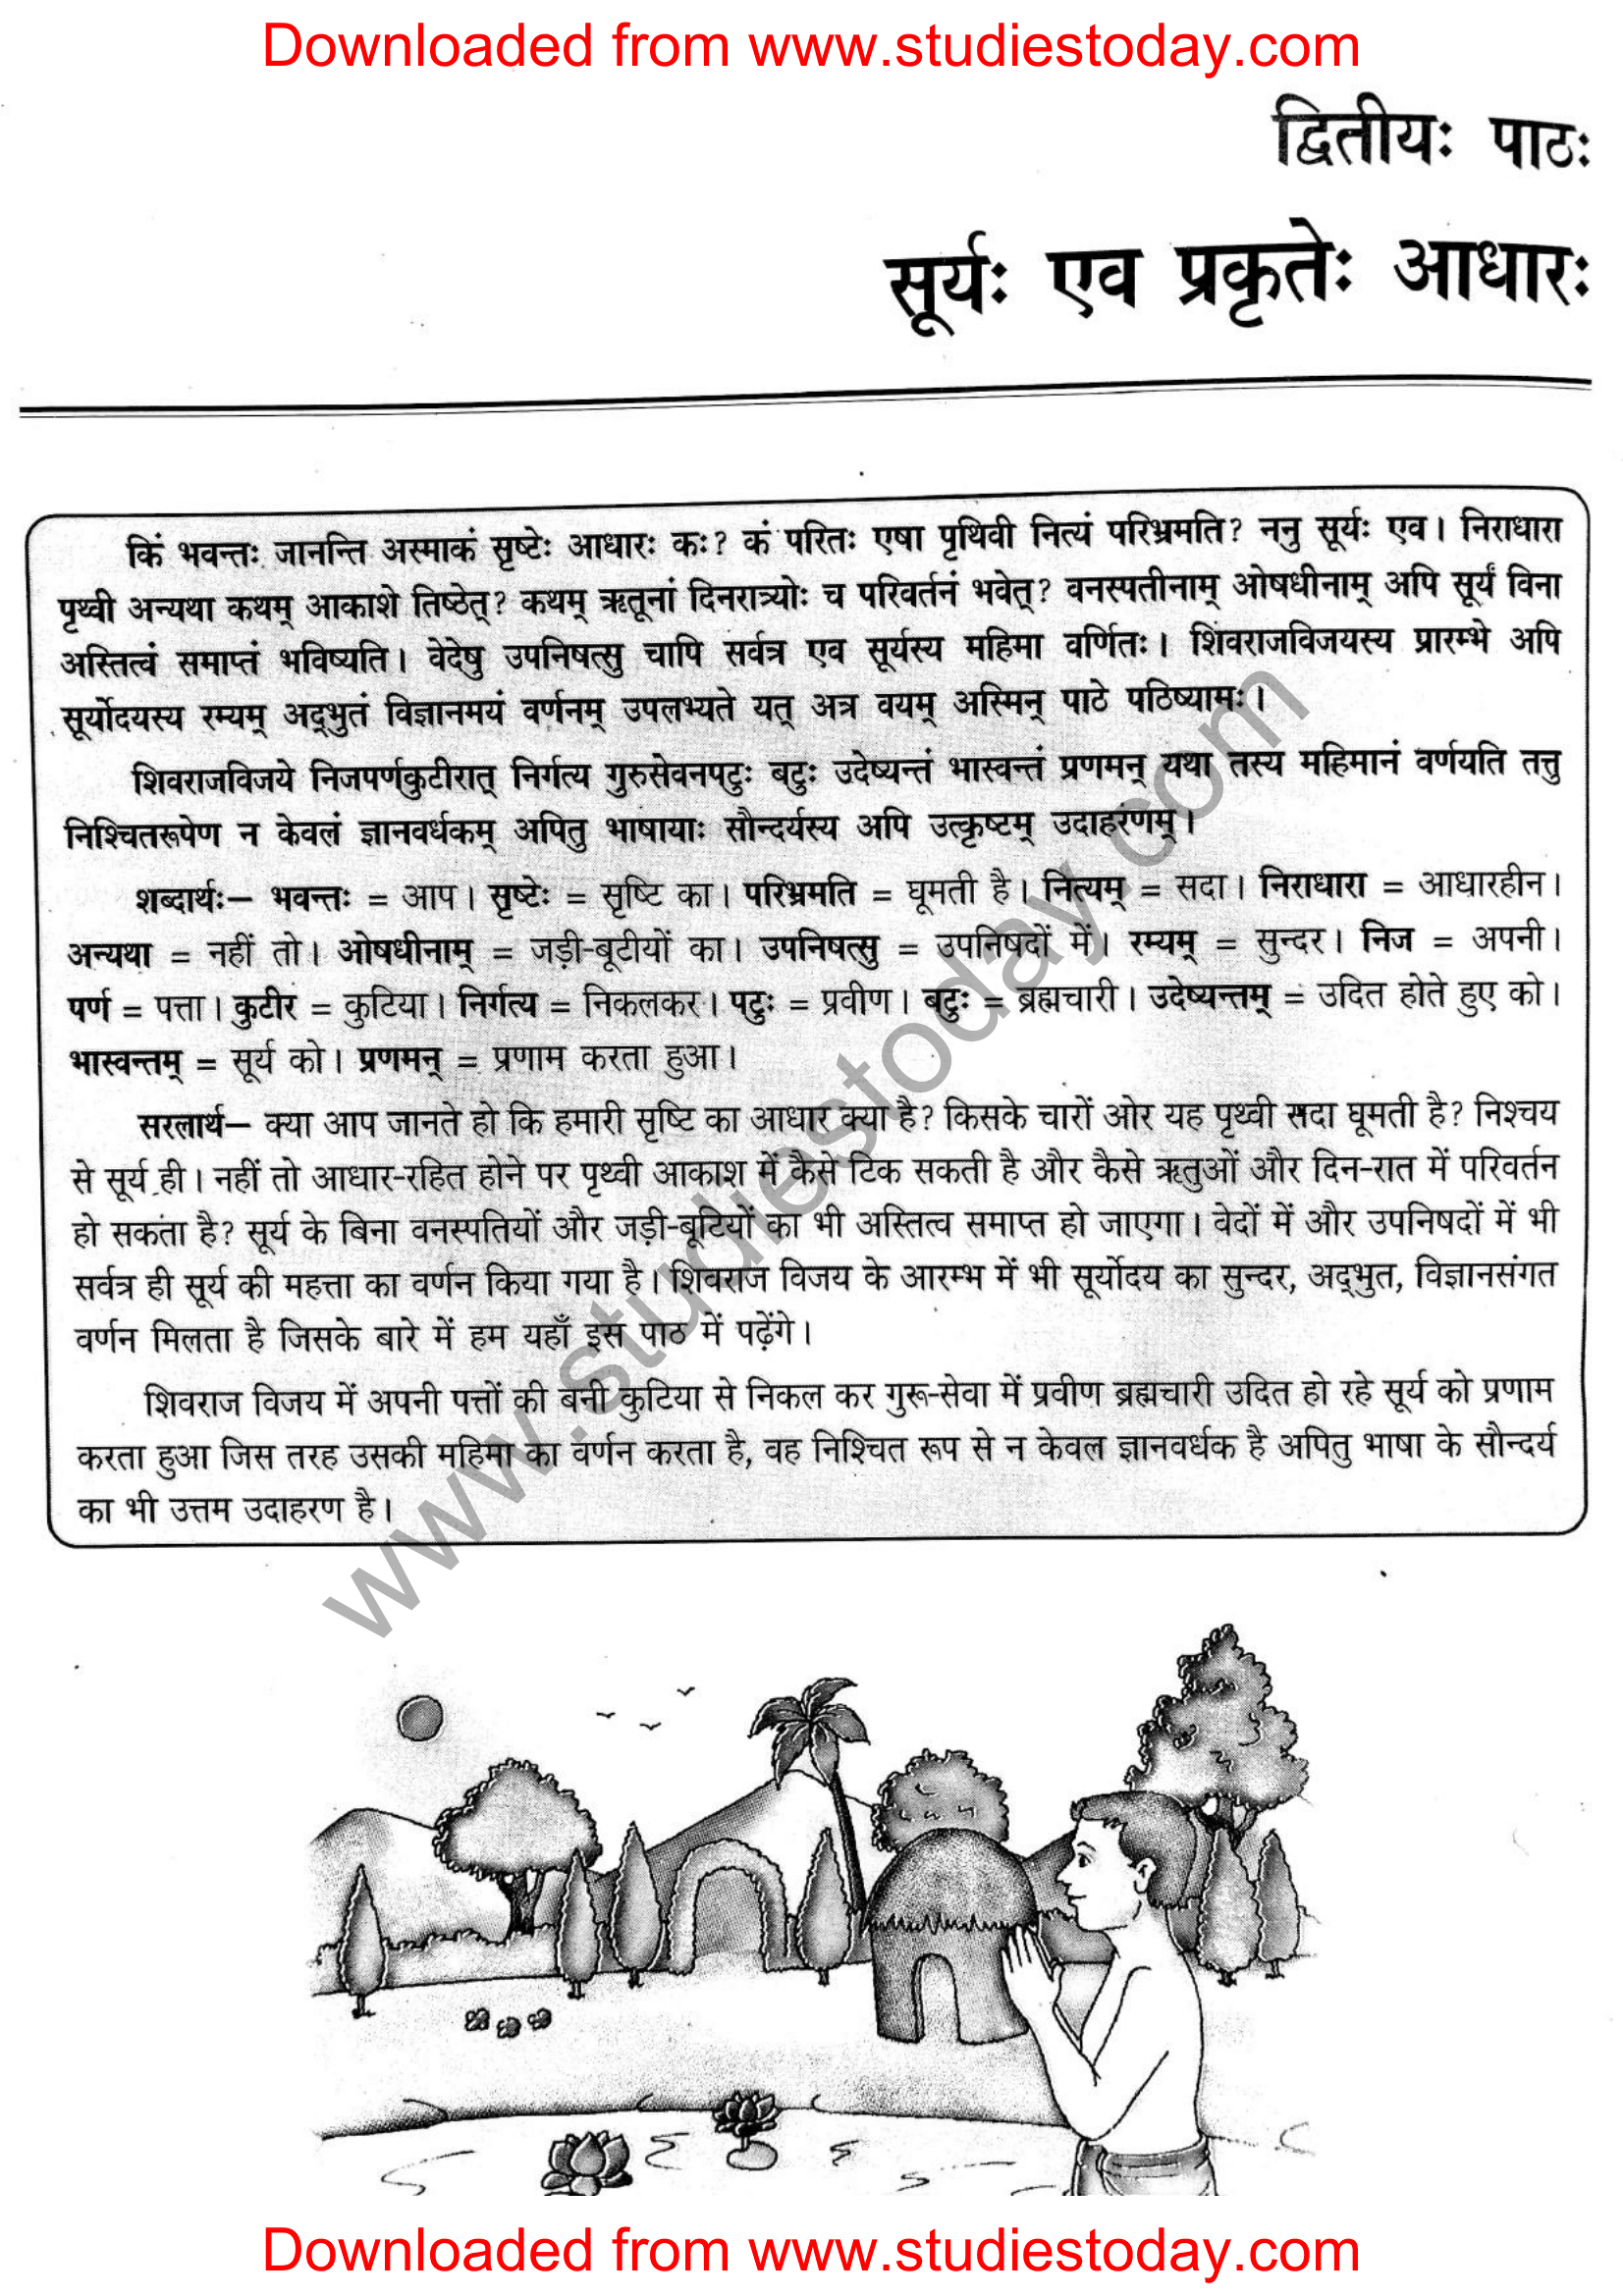 ncert-solutions-class-12-sanskrit-ritikia-chapter-2-01